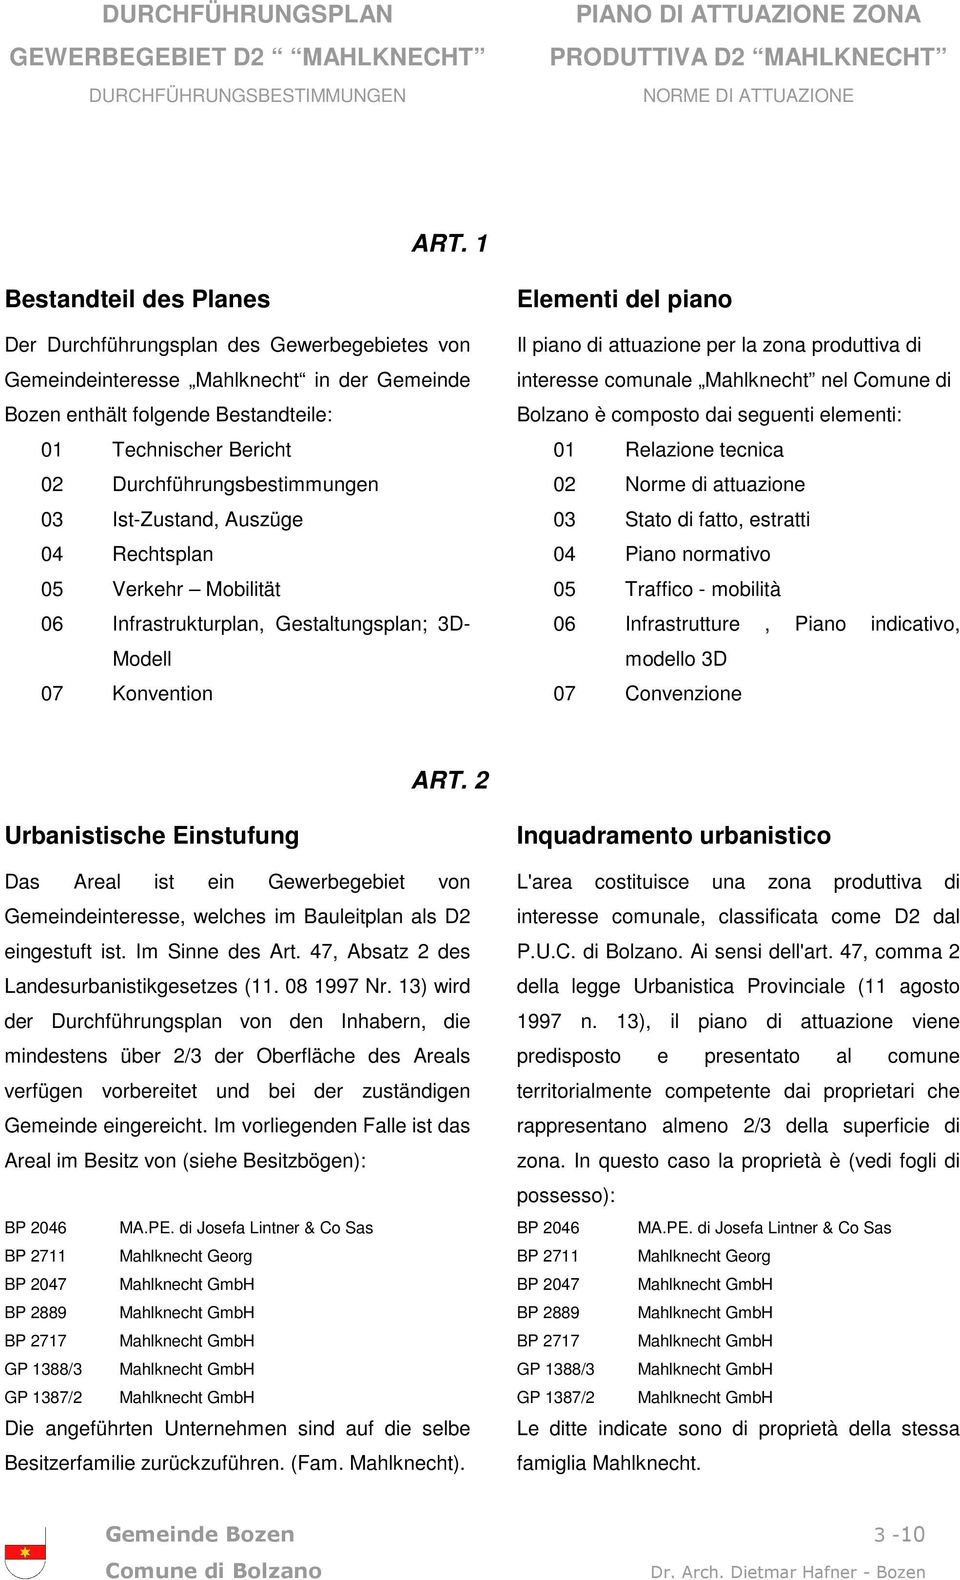 zona produttiva di interesse comunale Mahlknecht nel Comune di Bolzano è composto dai seguenti elementi: 01 Relazione tecnica 02 Norme di attuazione 03 Stato di fatto, estratti 04 Piano normativo 05